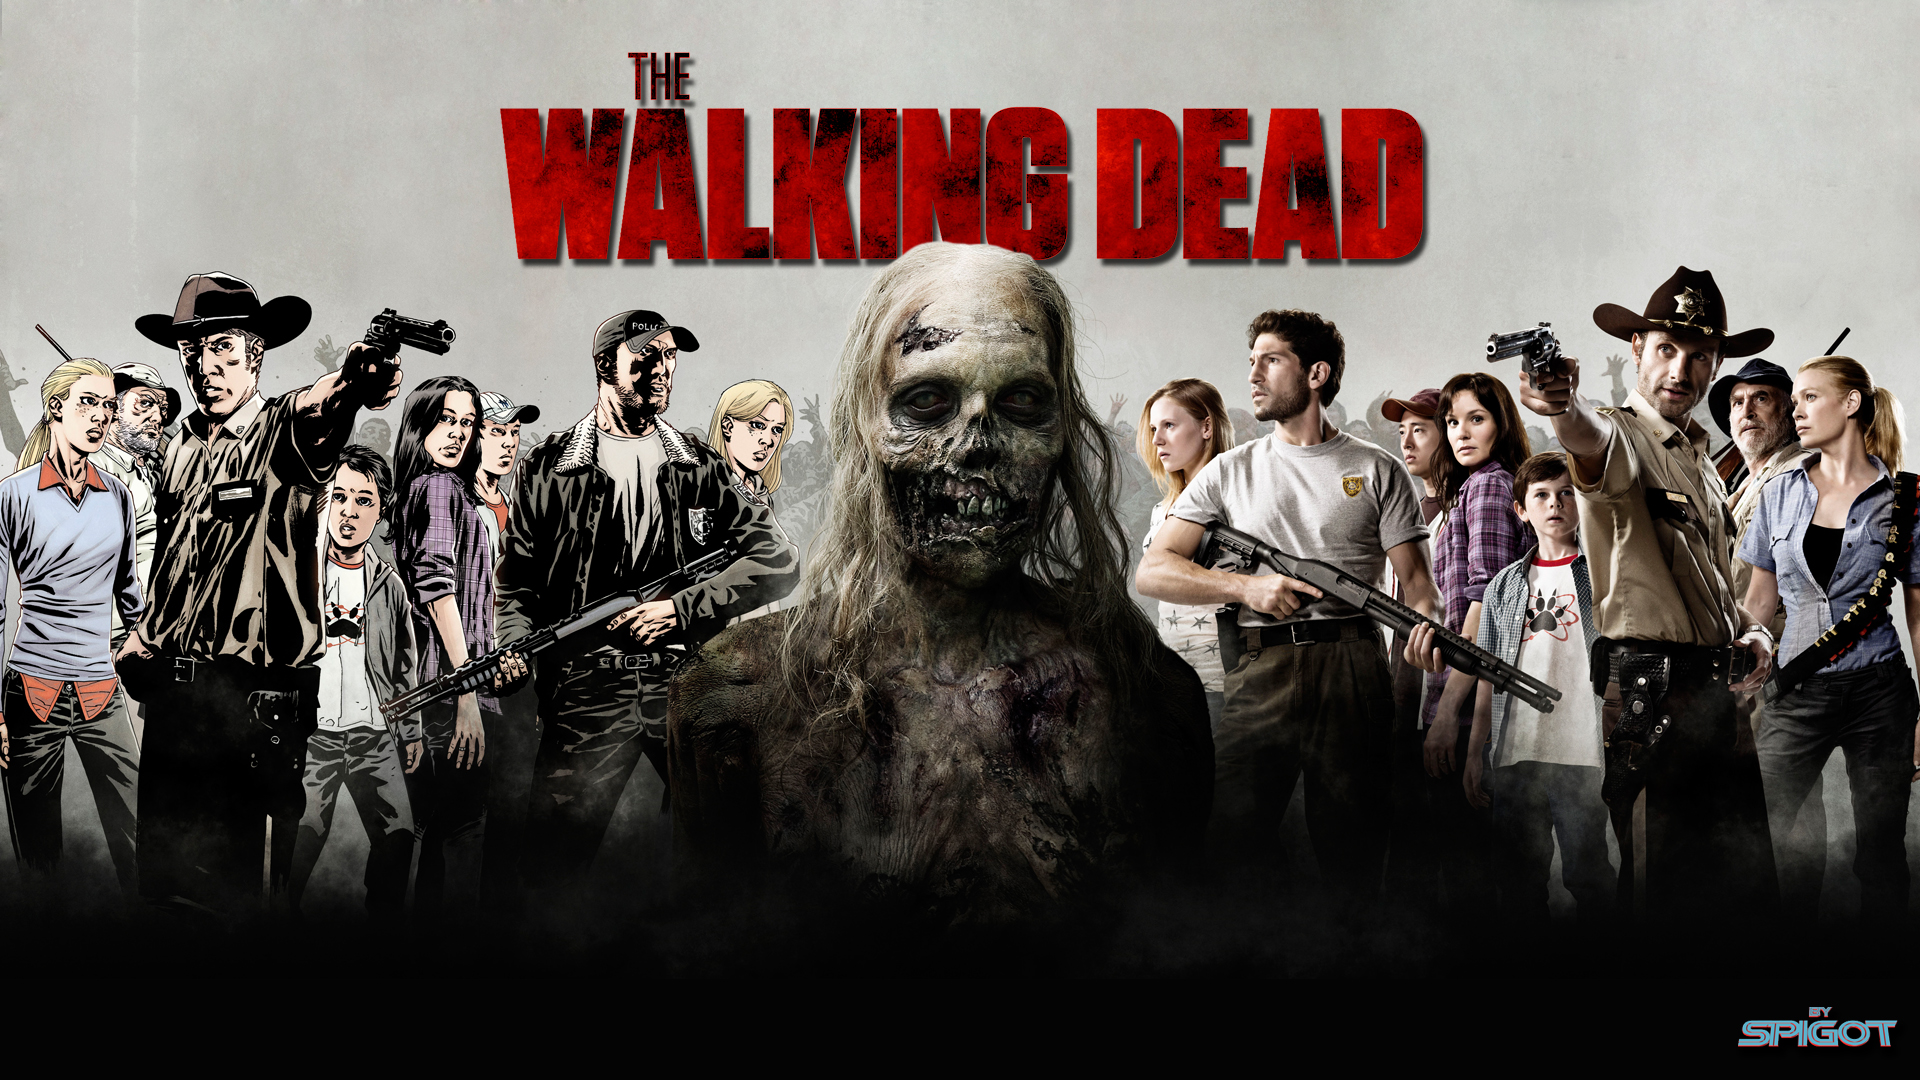 The Walking Dead HD Wallpaper For Desktop